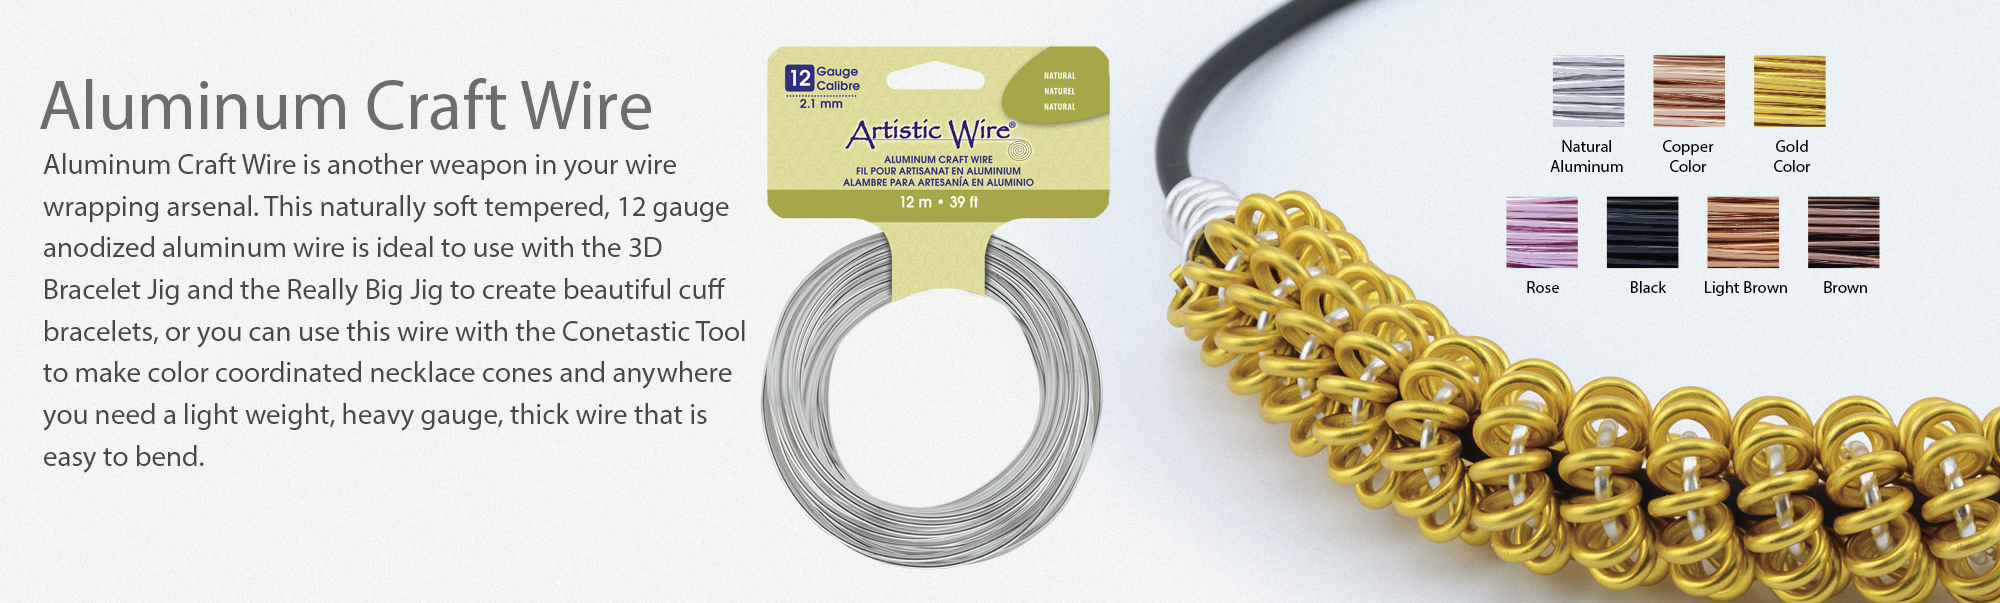 Artistic Wire Aluminum Craft Wire 12ga-Silver Tone, 1 count - Kroger